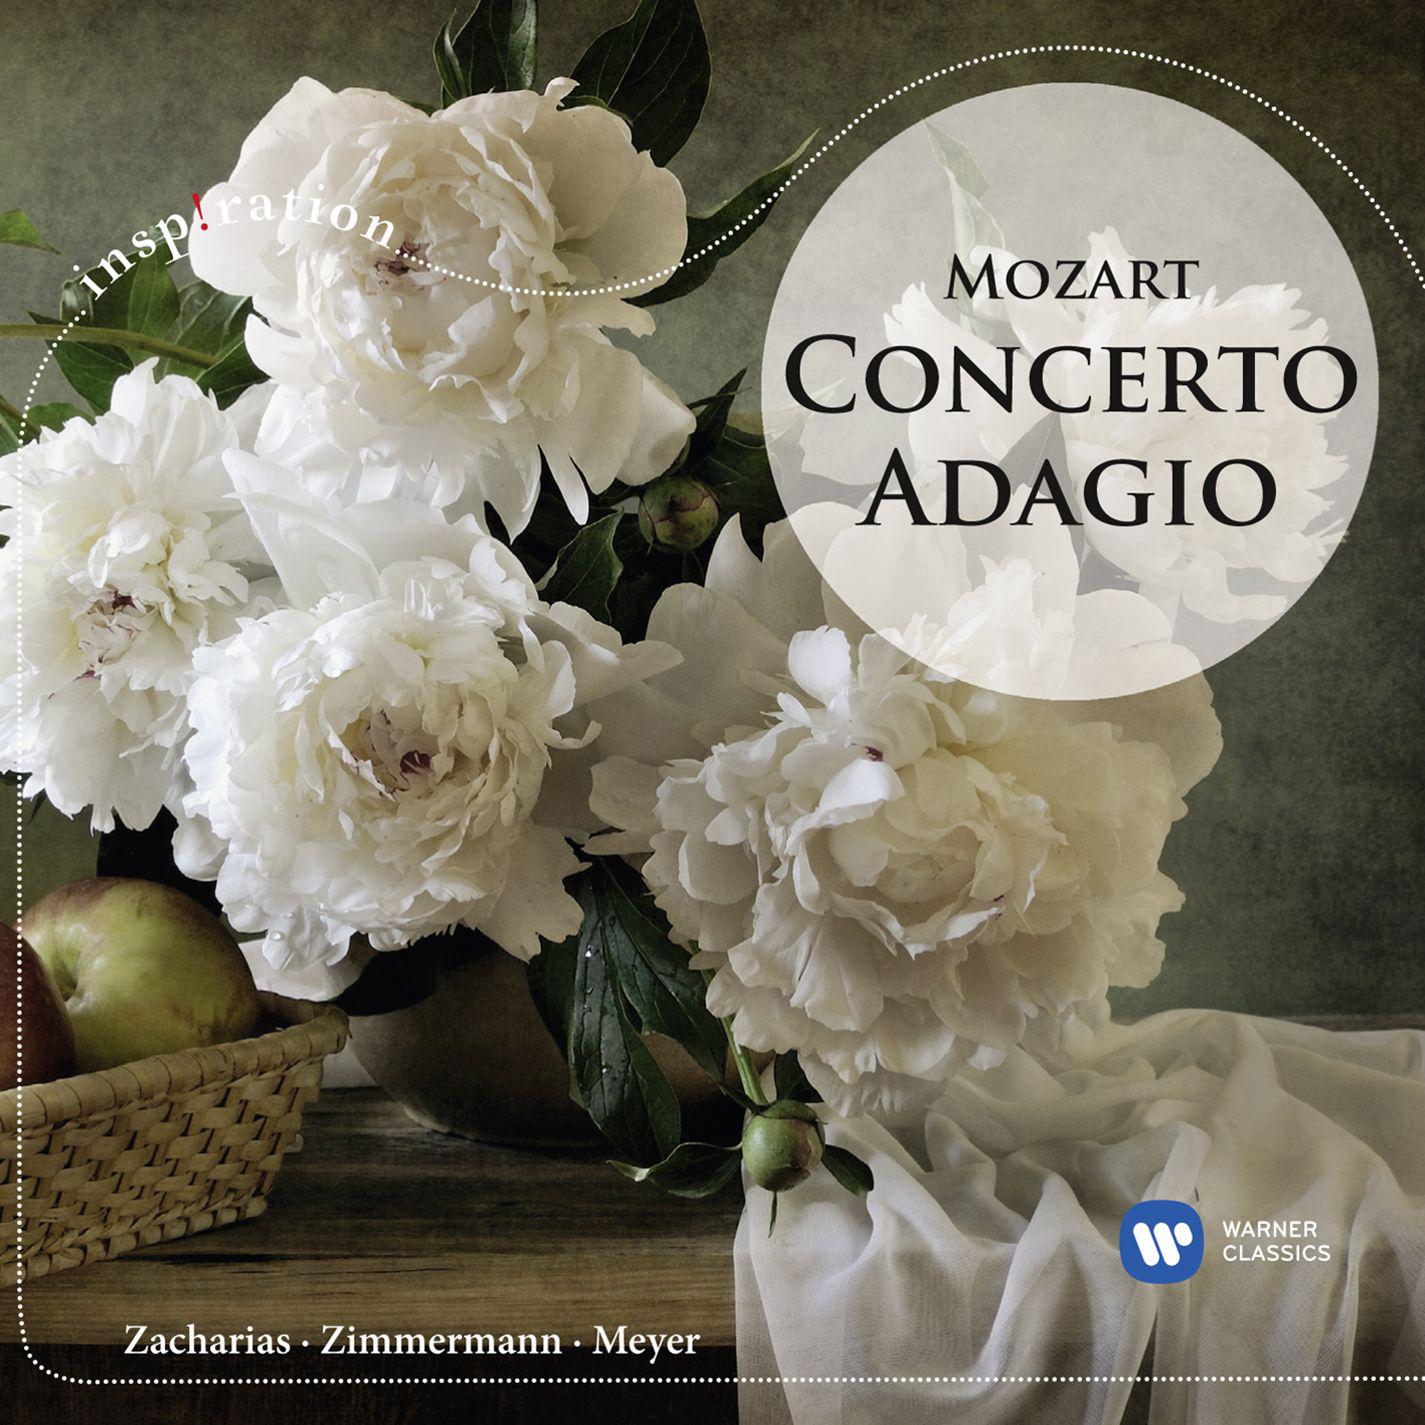 Piano Concerto No. 21 in C Major, K. 467:II. Andante